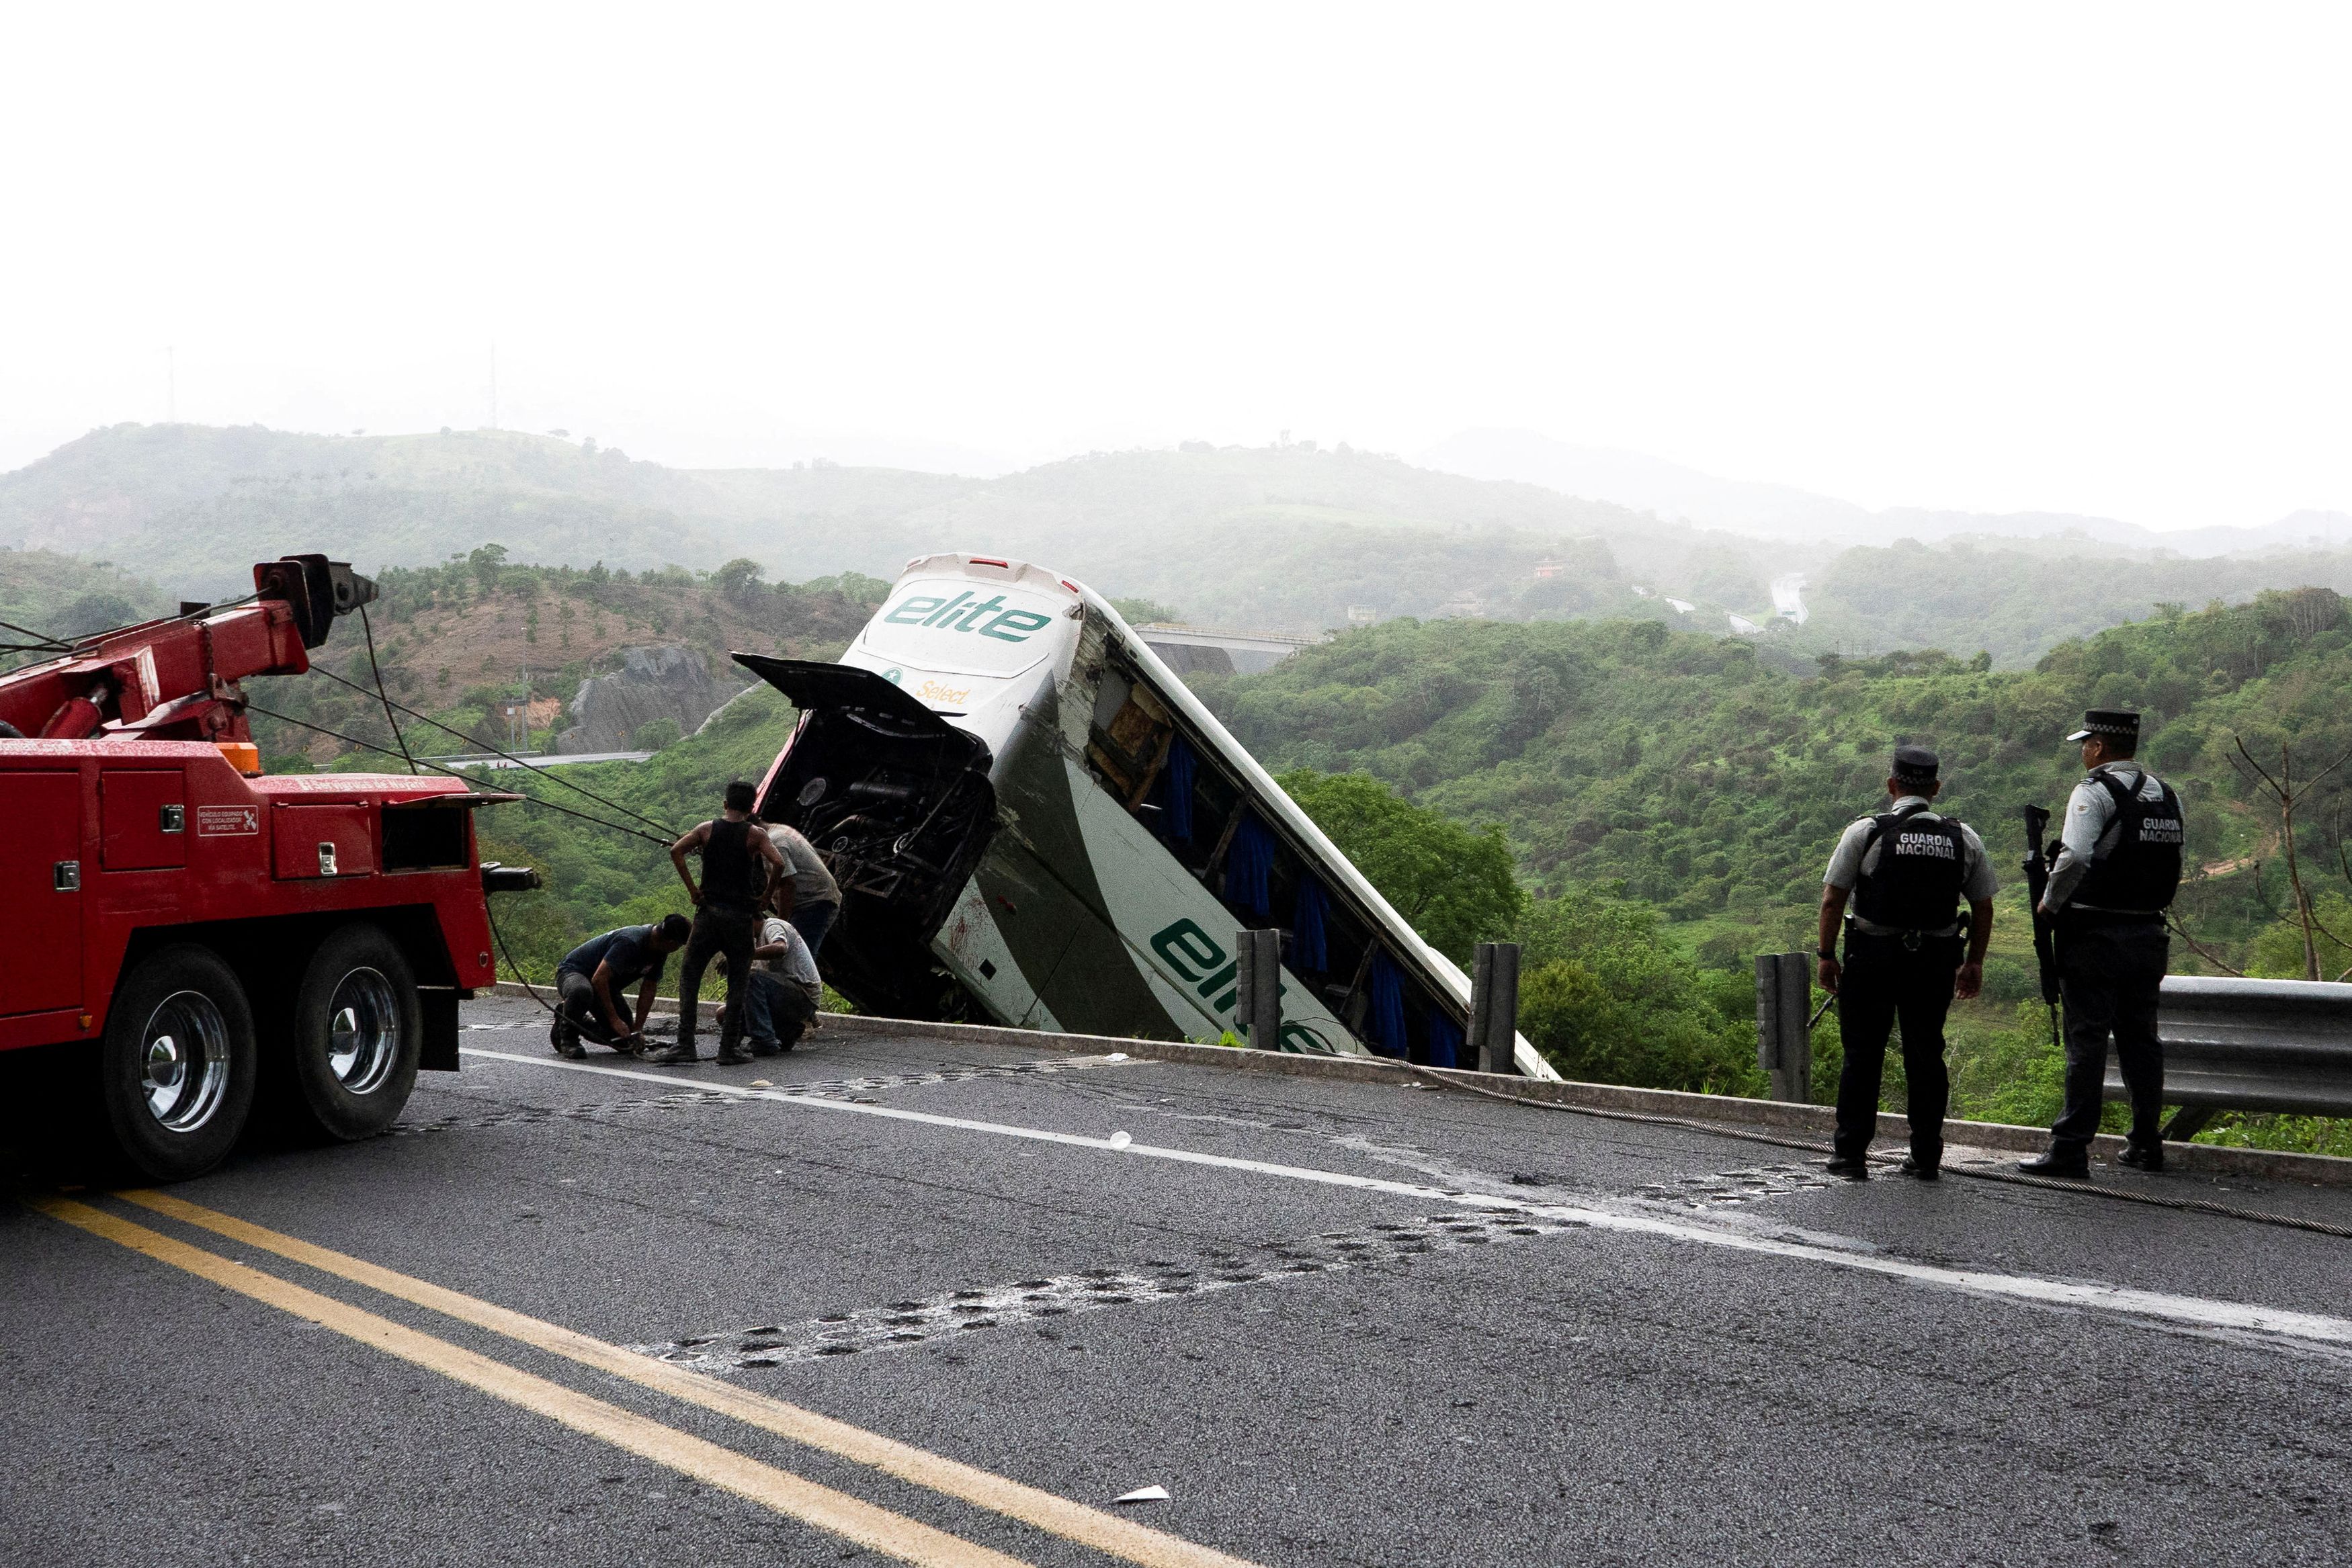 Μεξικό: Μετανάστες οι επιβάτες του λεωφορείου που έπεσε σε χαράδρα - Ανήλικοι ανάμεσα στα θύματα